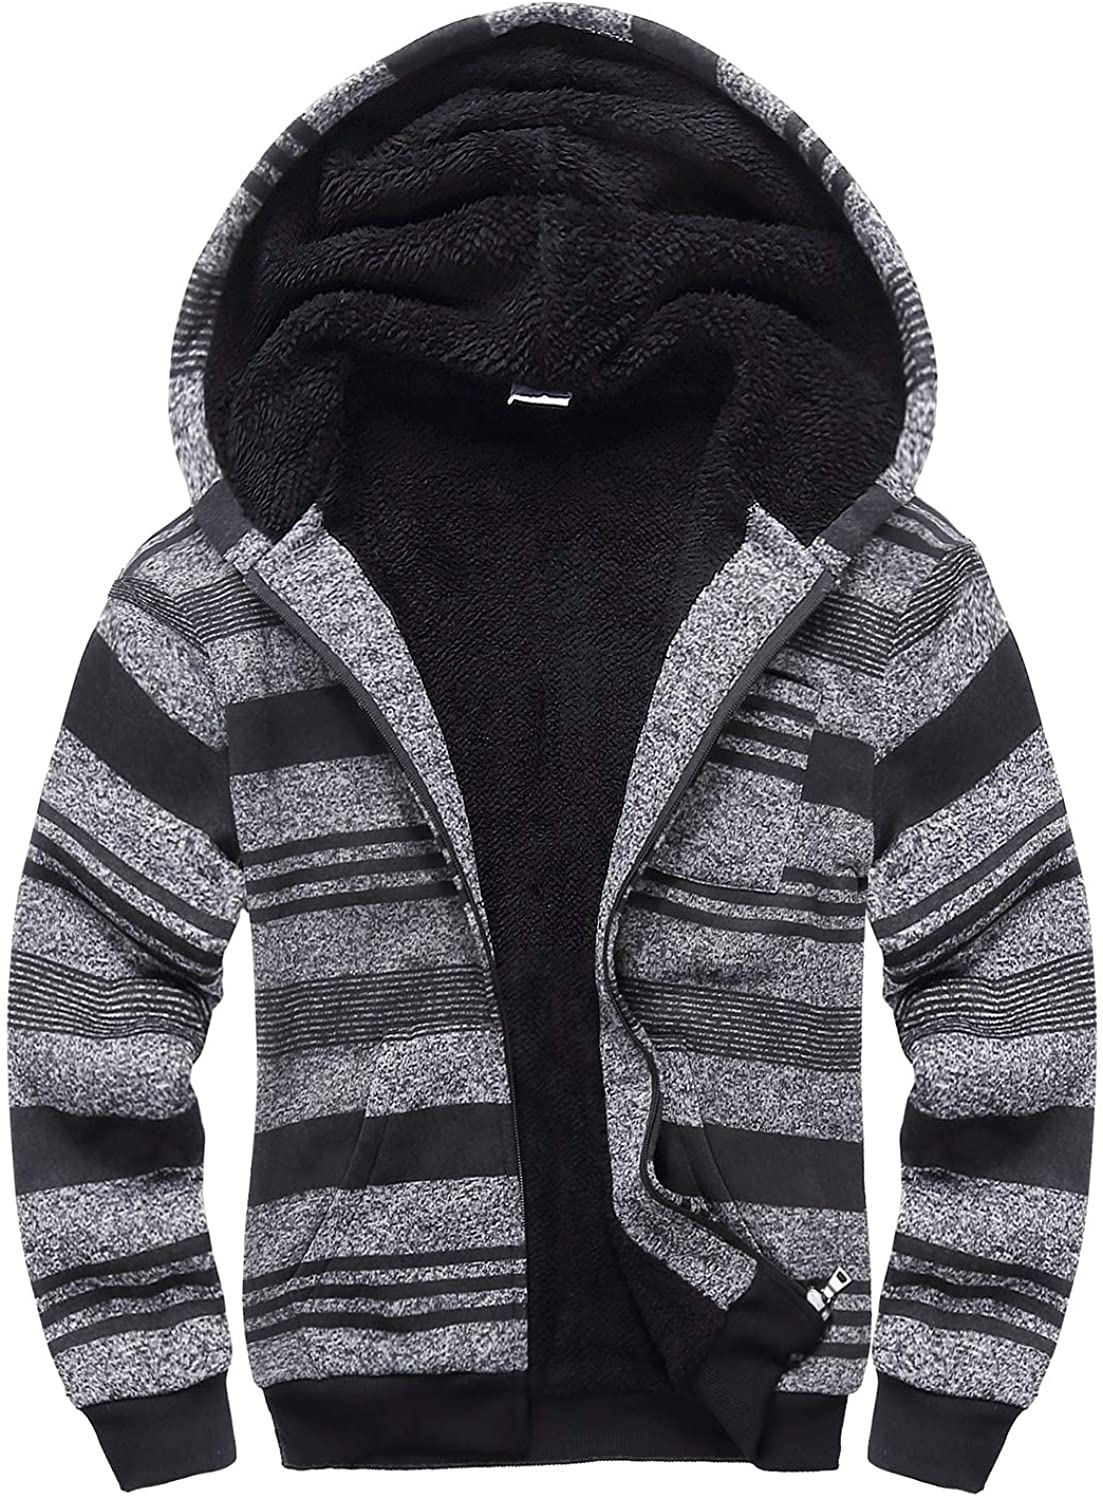 SWISSWELL Boys Hoodie Sherpa Fleece Lined Jacket Soft Warm Zipper Sweatshirt Outerwear 